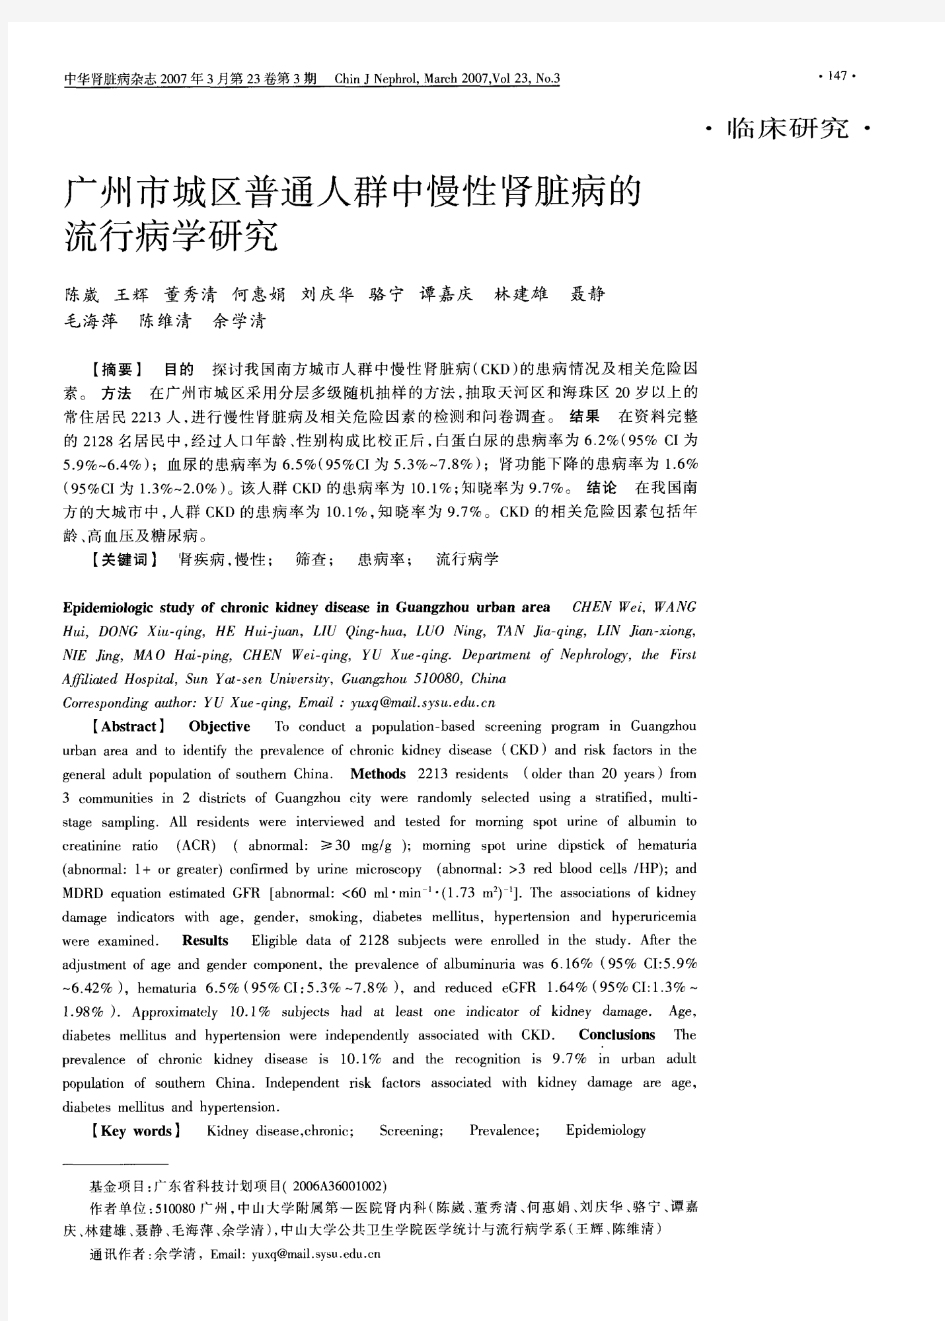 广州市城区普通人群中慢性肾脏病的流行病学研究